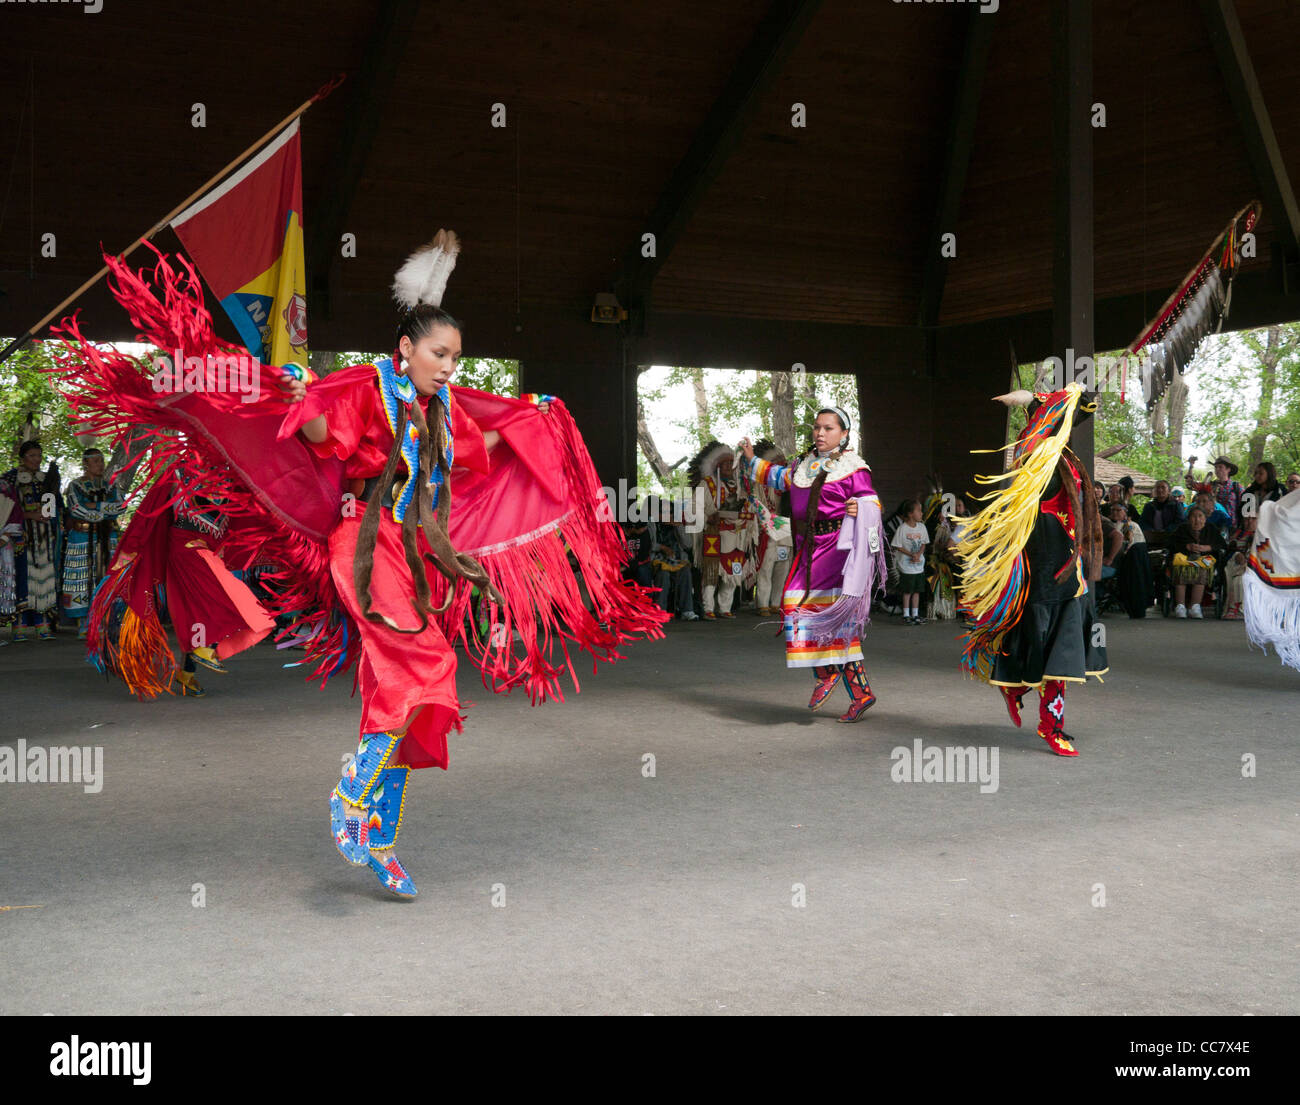 Danser les gens des Premières Nations dans le village indien au Stampede de Calgary au Canada Banque D'Images